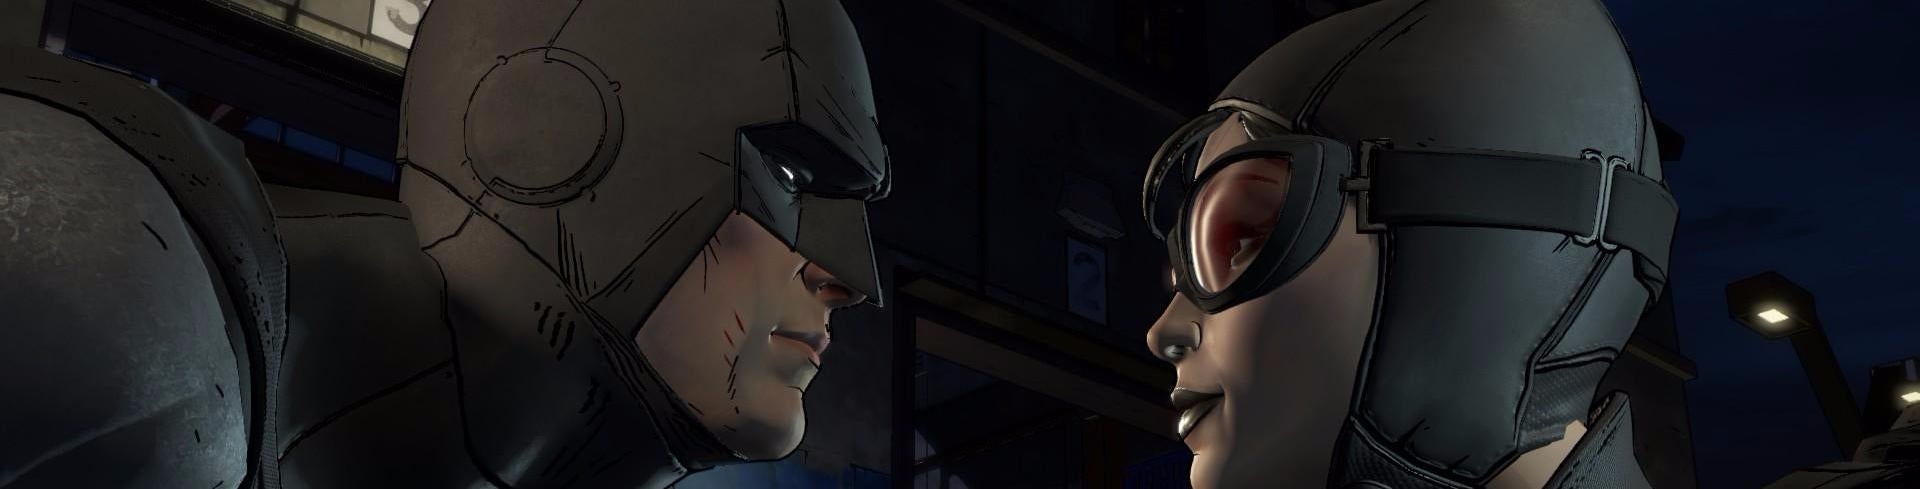 Imagem para Batman: The Telltale Series - Análise